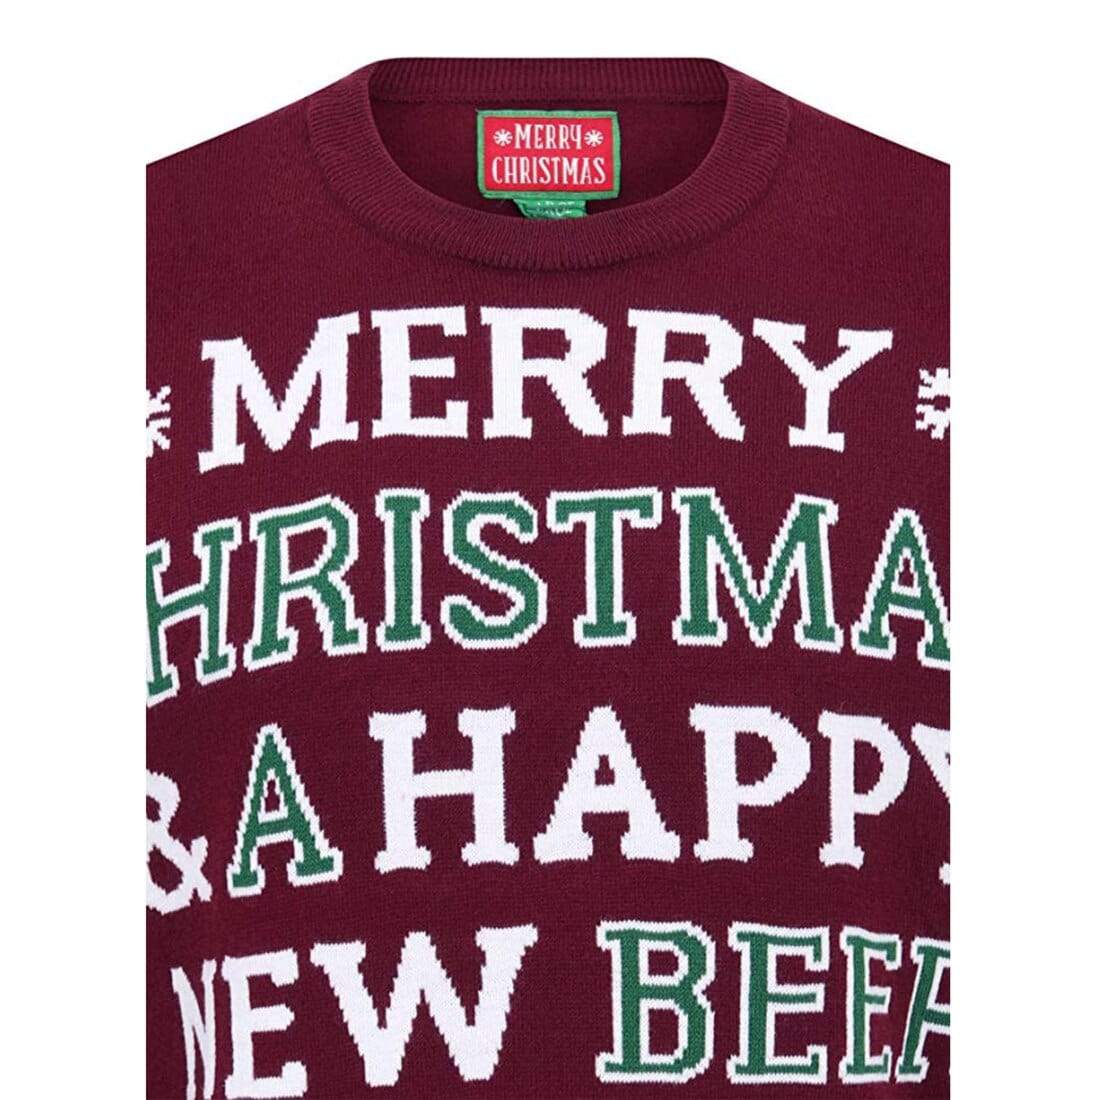 Mr Crimbo Mens Happy New Beer Slogan Knit Christmas Jumper - MrCrimbo.co.uk -SRG1A13460_A - Oxblood Red -beer jumper